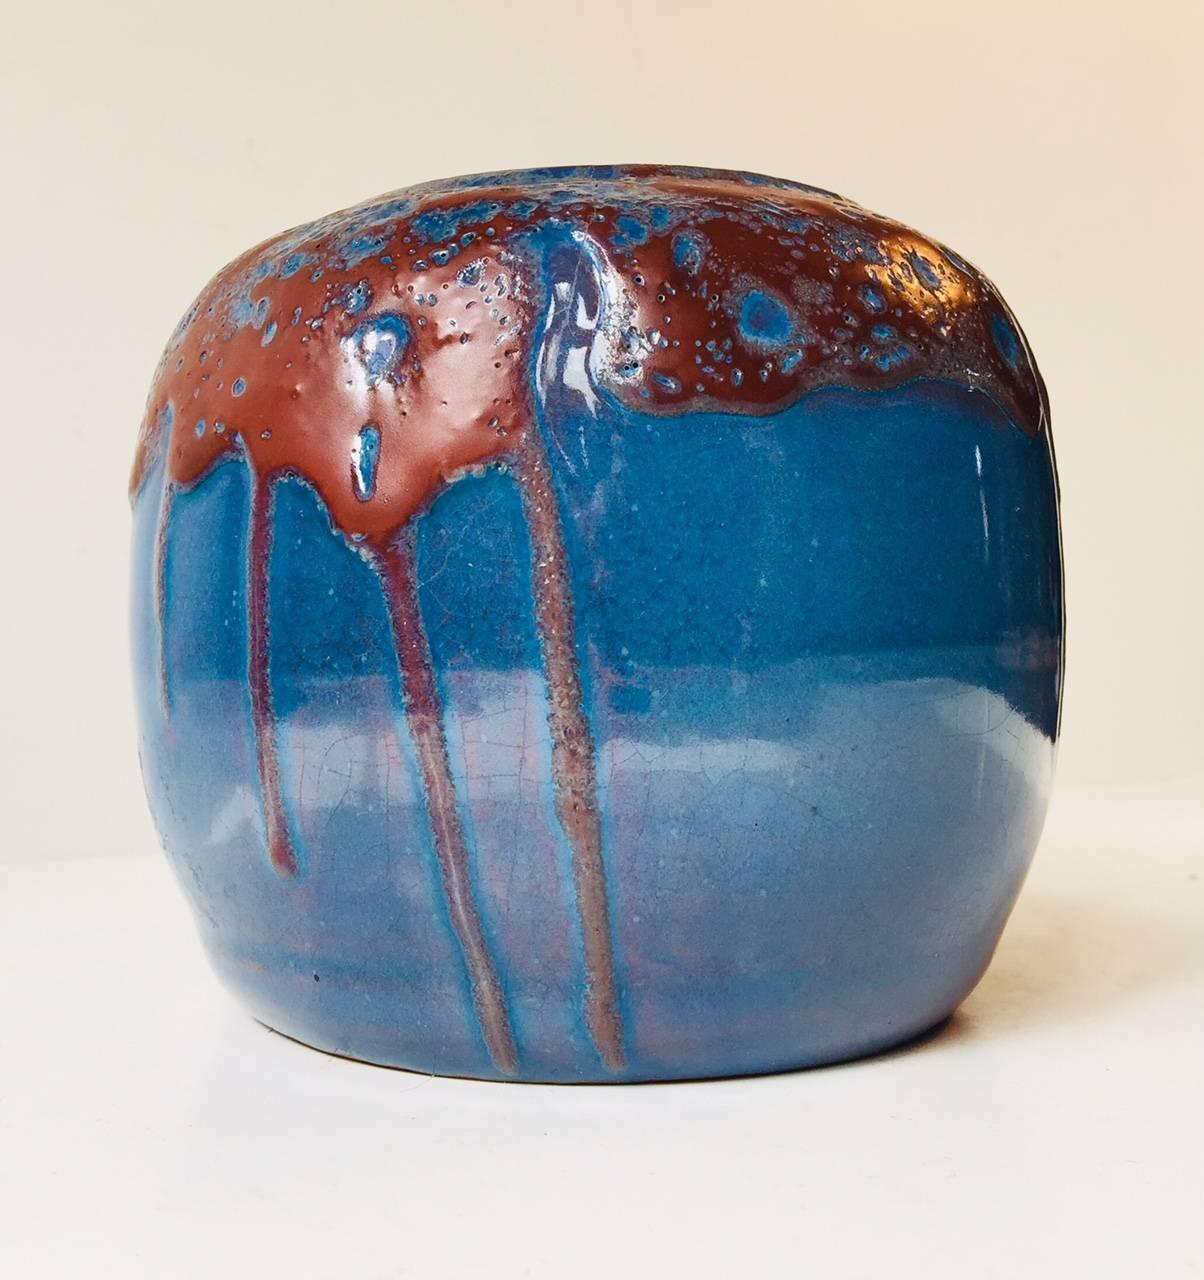 Vase aus skandinavischer Keramik, dekoriert mit einer violettblauen Flammglasur und einer Überglasur oder Tropfglasur in Oxblood-Rot. Nicht identifizierter skandinavischer Keramiker: EHP und sein Datum 1936. Der Stil dieses Stücks erinnert an das